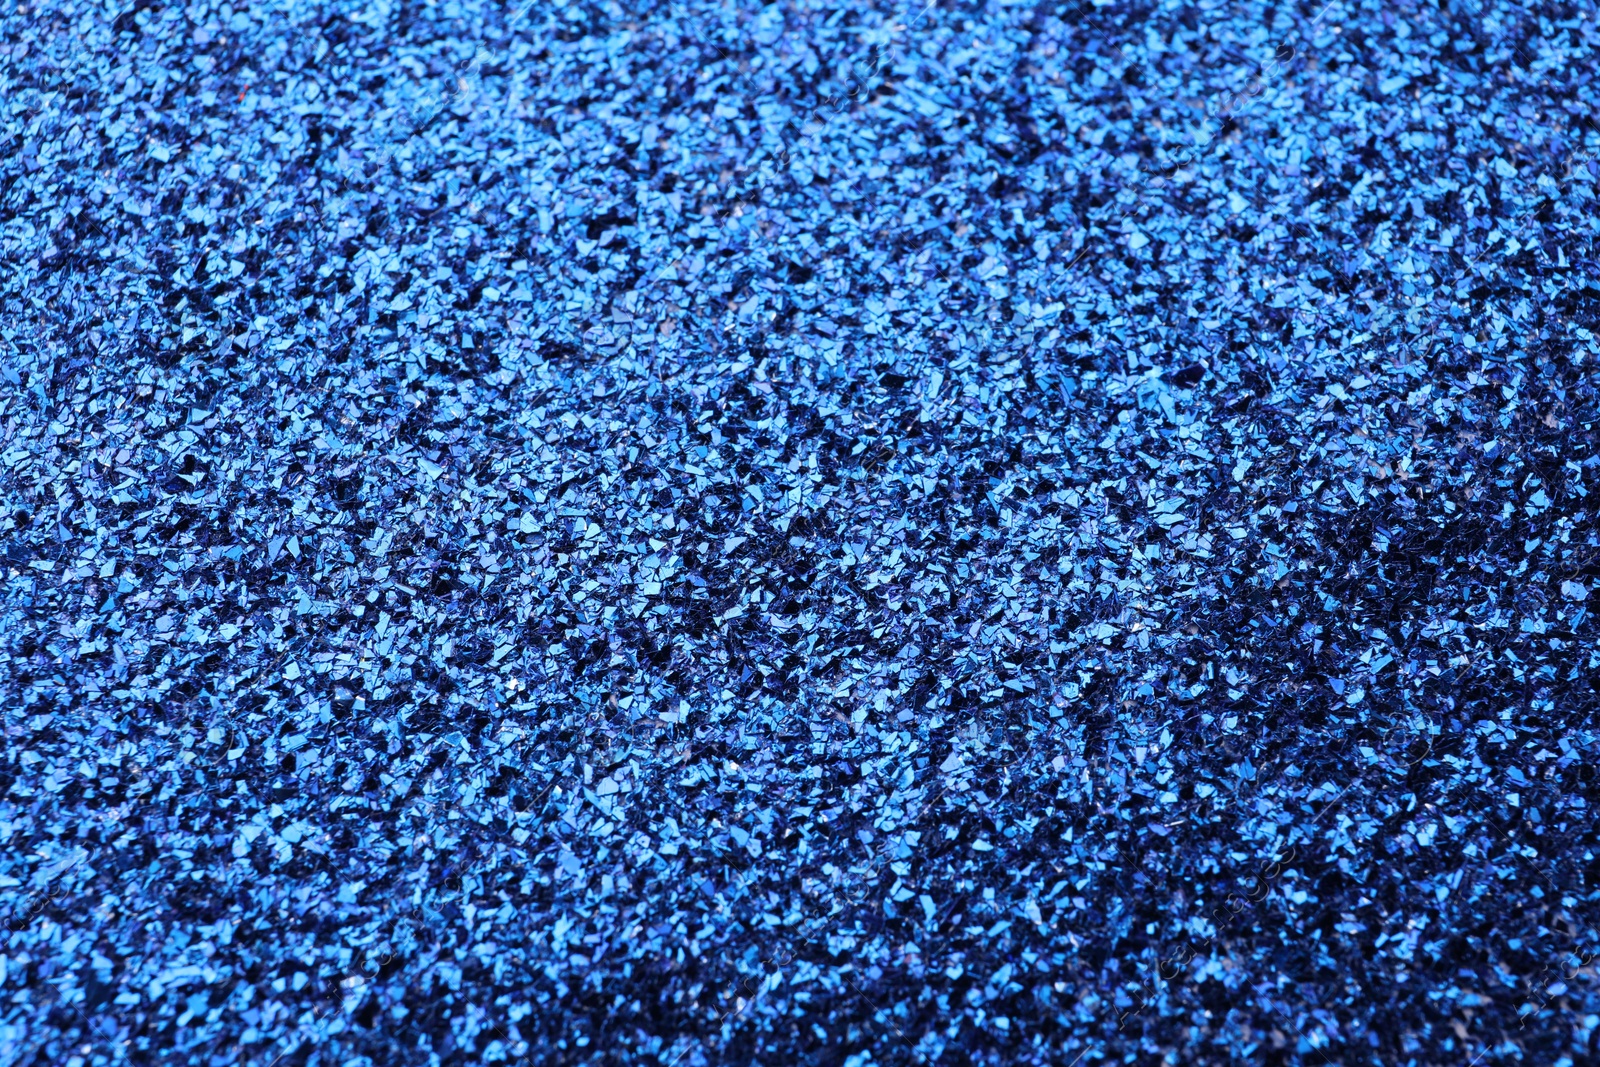 Photo of Beautiful shiny blue glitter as background, closeup